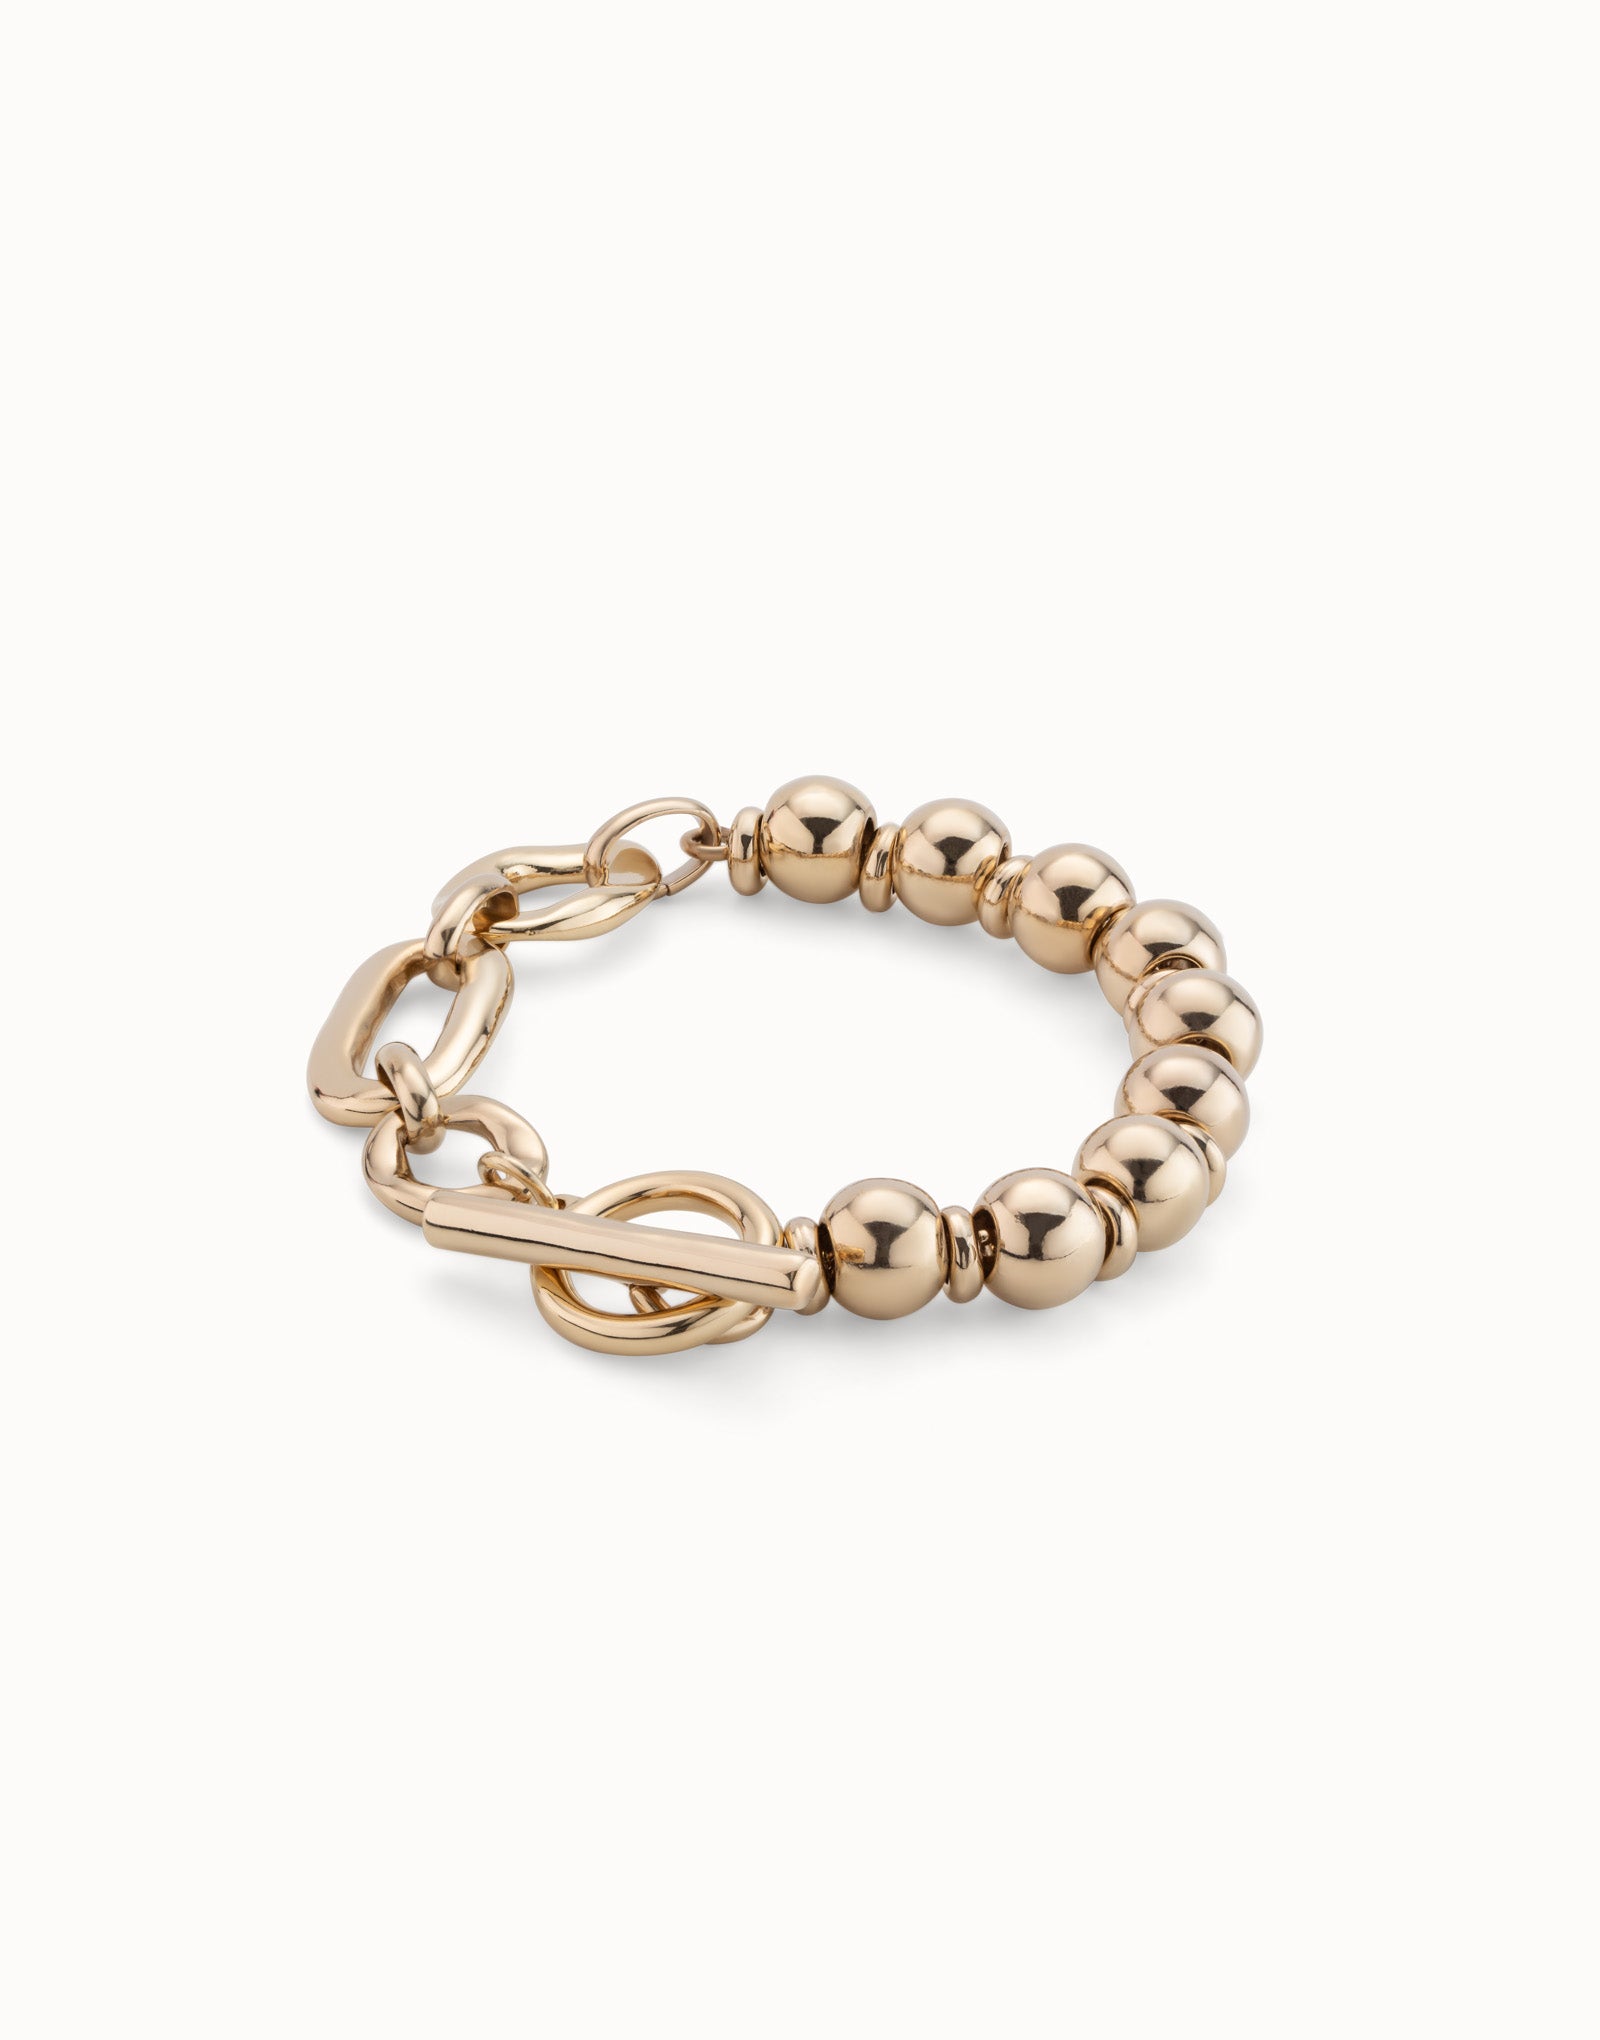 UNO de 50 Cheerful Gold Bracelet Size M